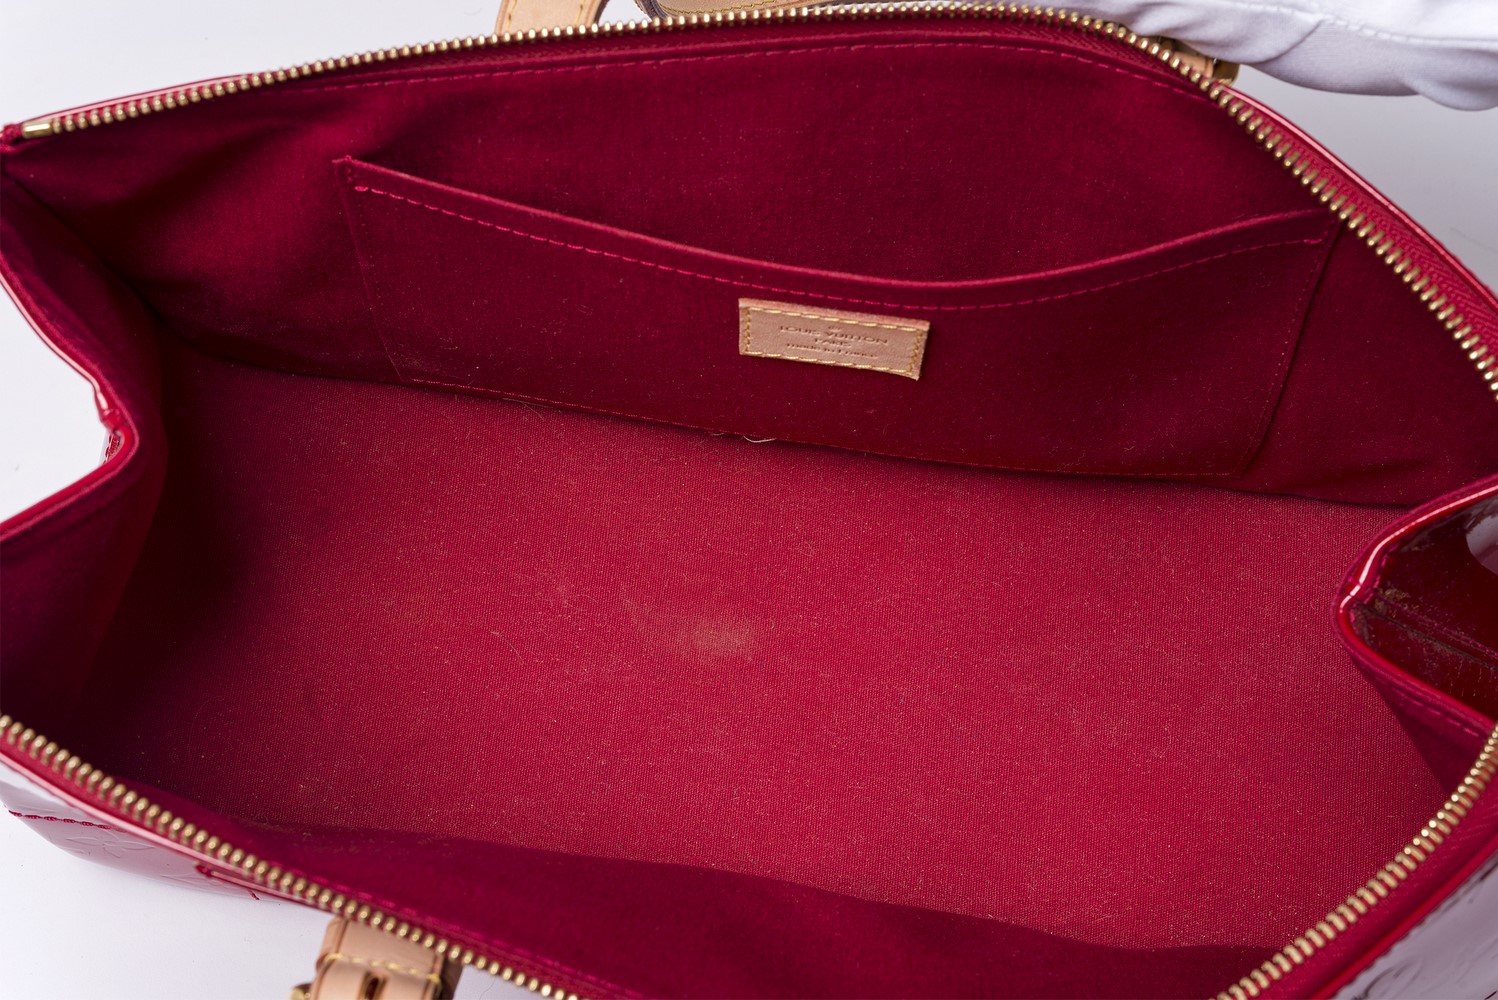 Sac Louis Vuitton Rosewood Authentique d'occasion en cuir vernis couleur pomme d'amour (rouge)